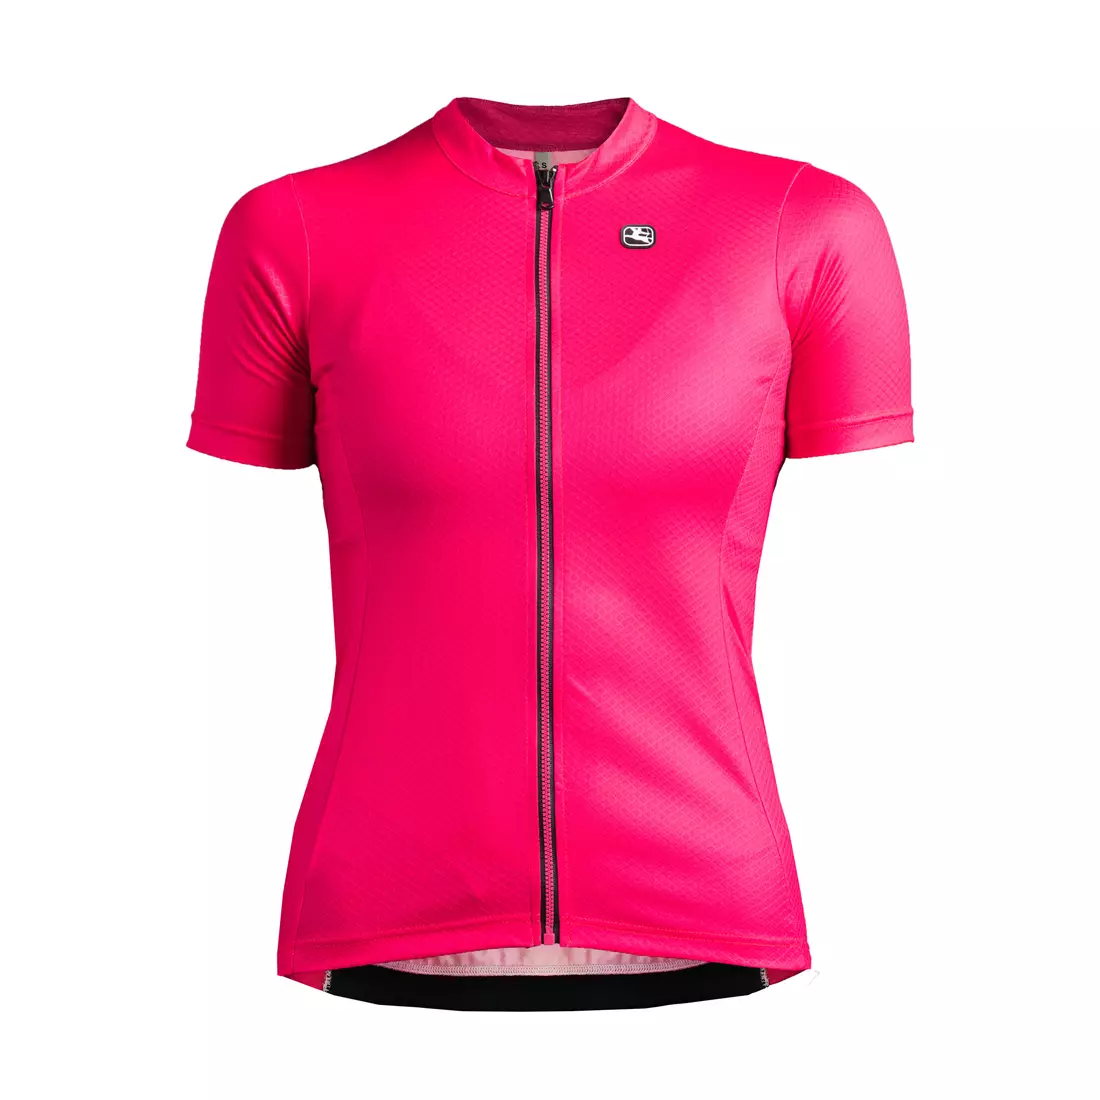 Dámsky cyklistický dres GIORDANA FUSION, ružový